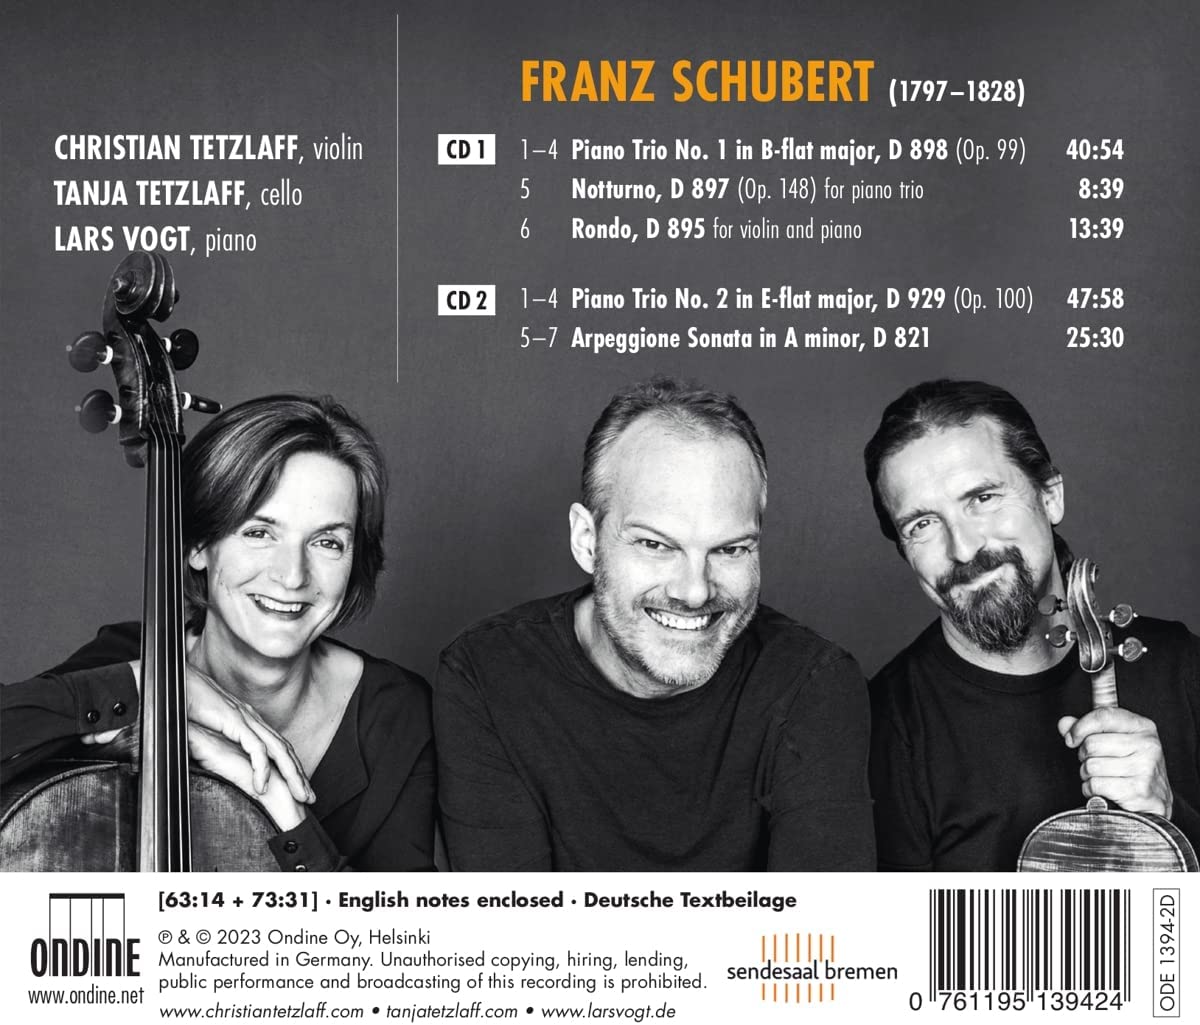 Lars Vogt  / Christian & Tanja Tetzlaff  슈베르트: 피아노 트리오 전곡, 노투르노, 론도, 아르페지오 소나타 (Schubert: Works for Piano Trio & Arpeggione Sonata)